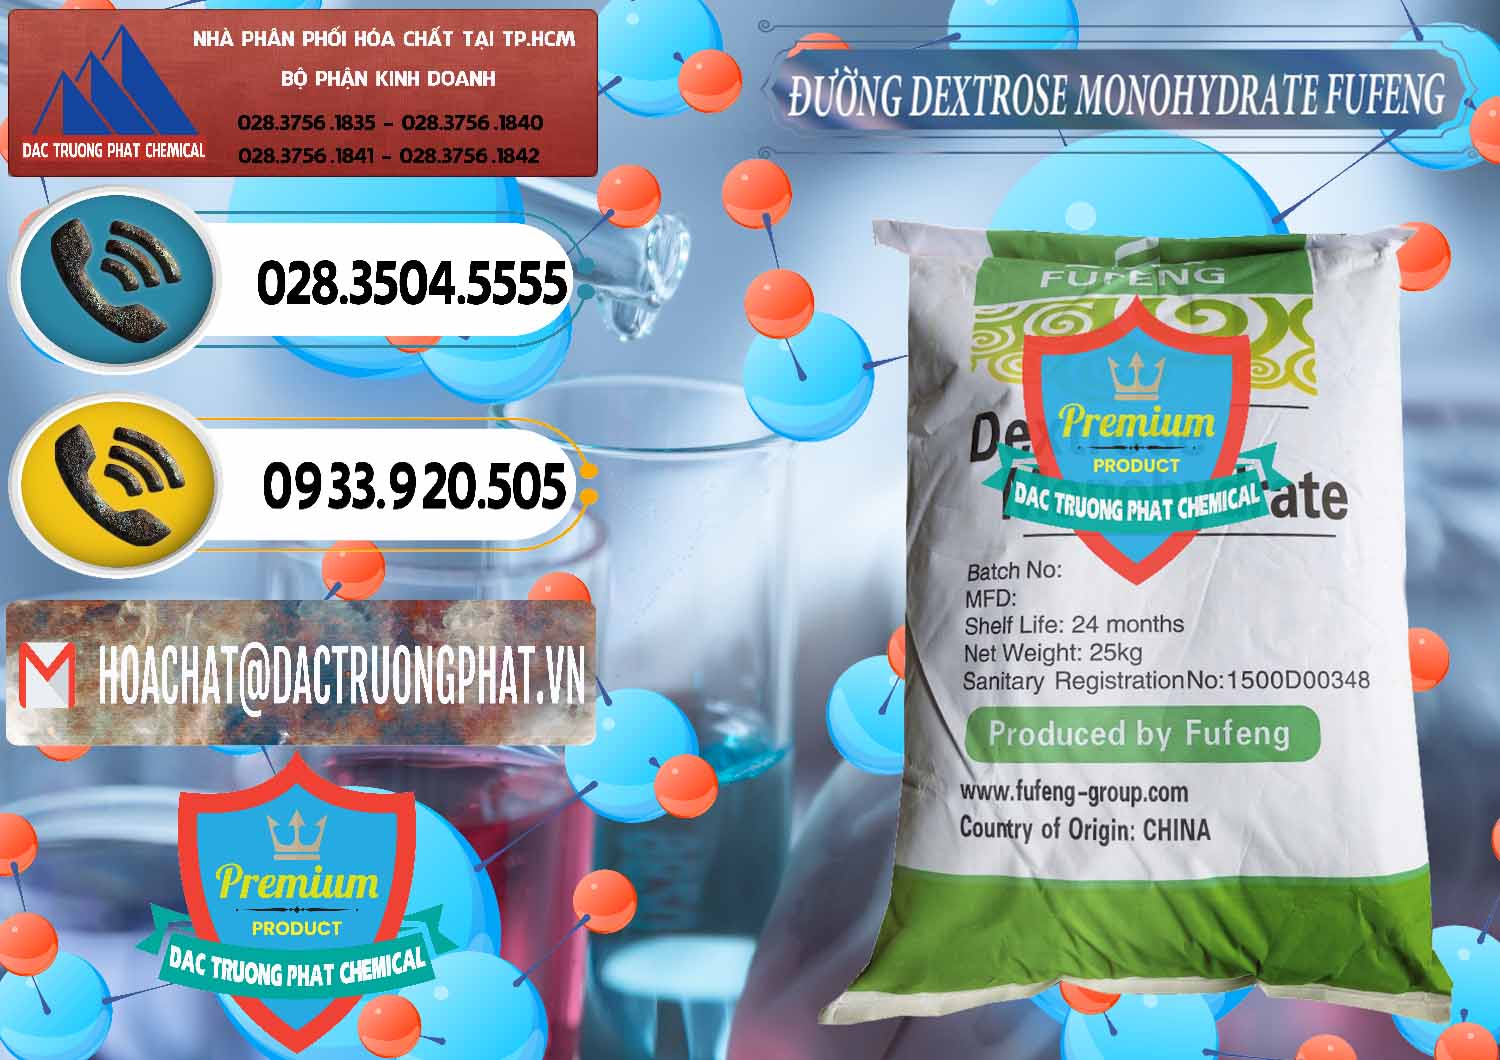 Công ty chuyên cung cấp ( bán ) Đường Dextrose Monohydrate Food Grade Fufeng Trung Quốc China - 0223 - Nhập khẩu - cung cấp hóa chất tại TP.HCM - hoachatdetnhuom.vn